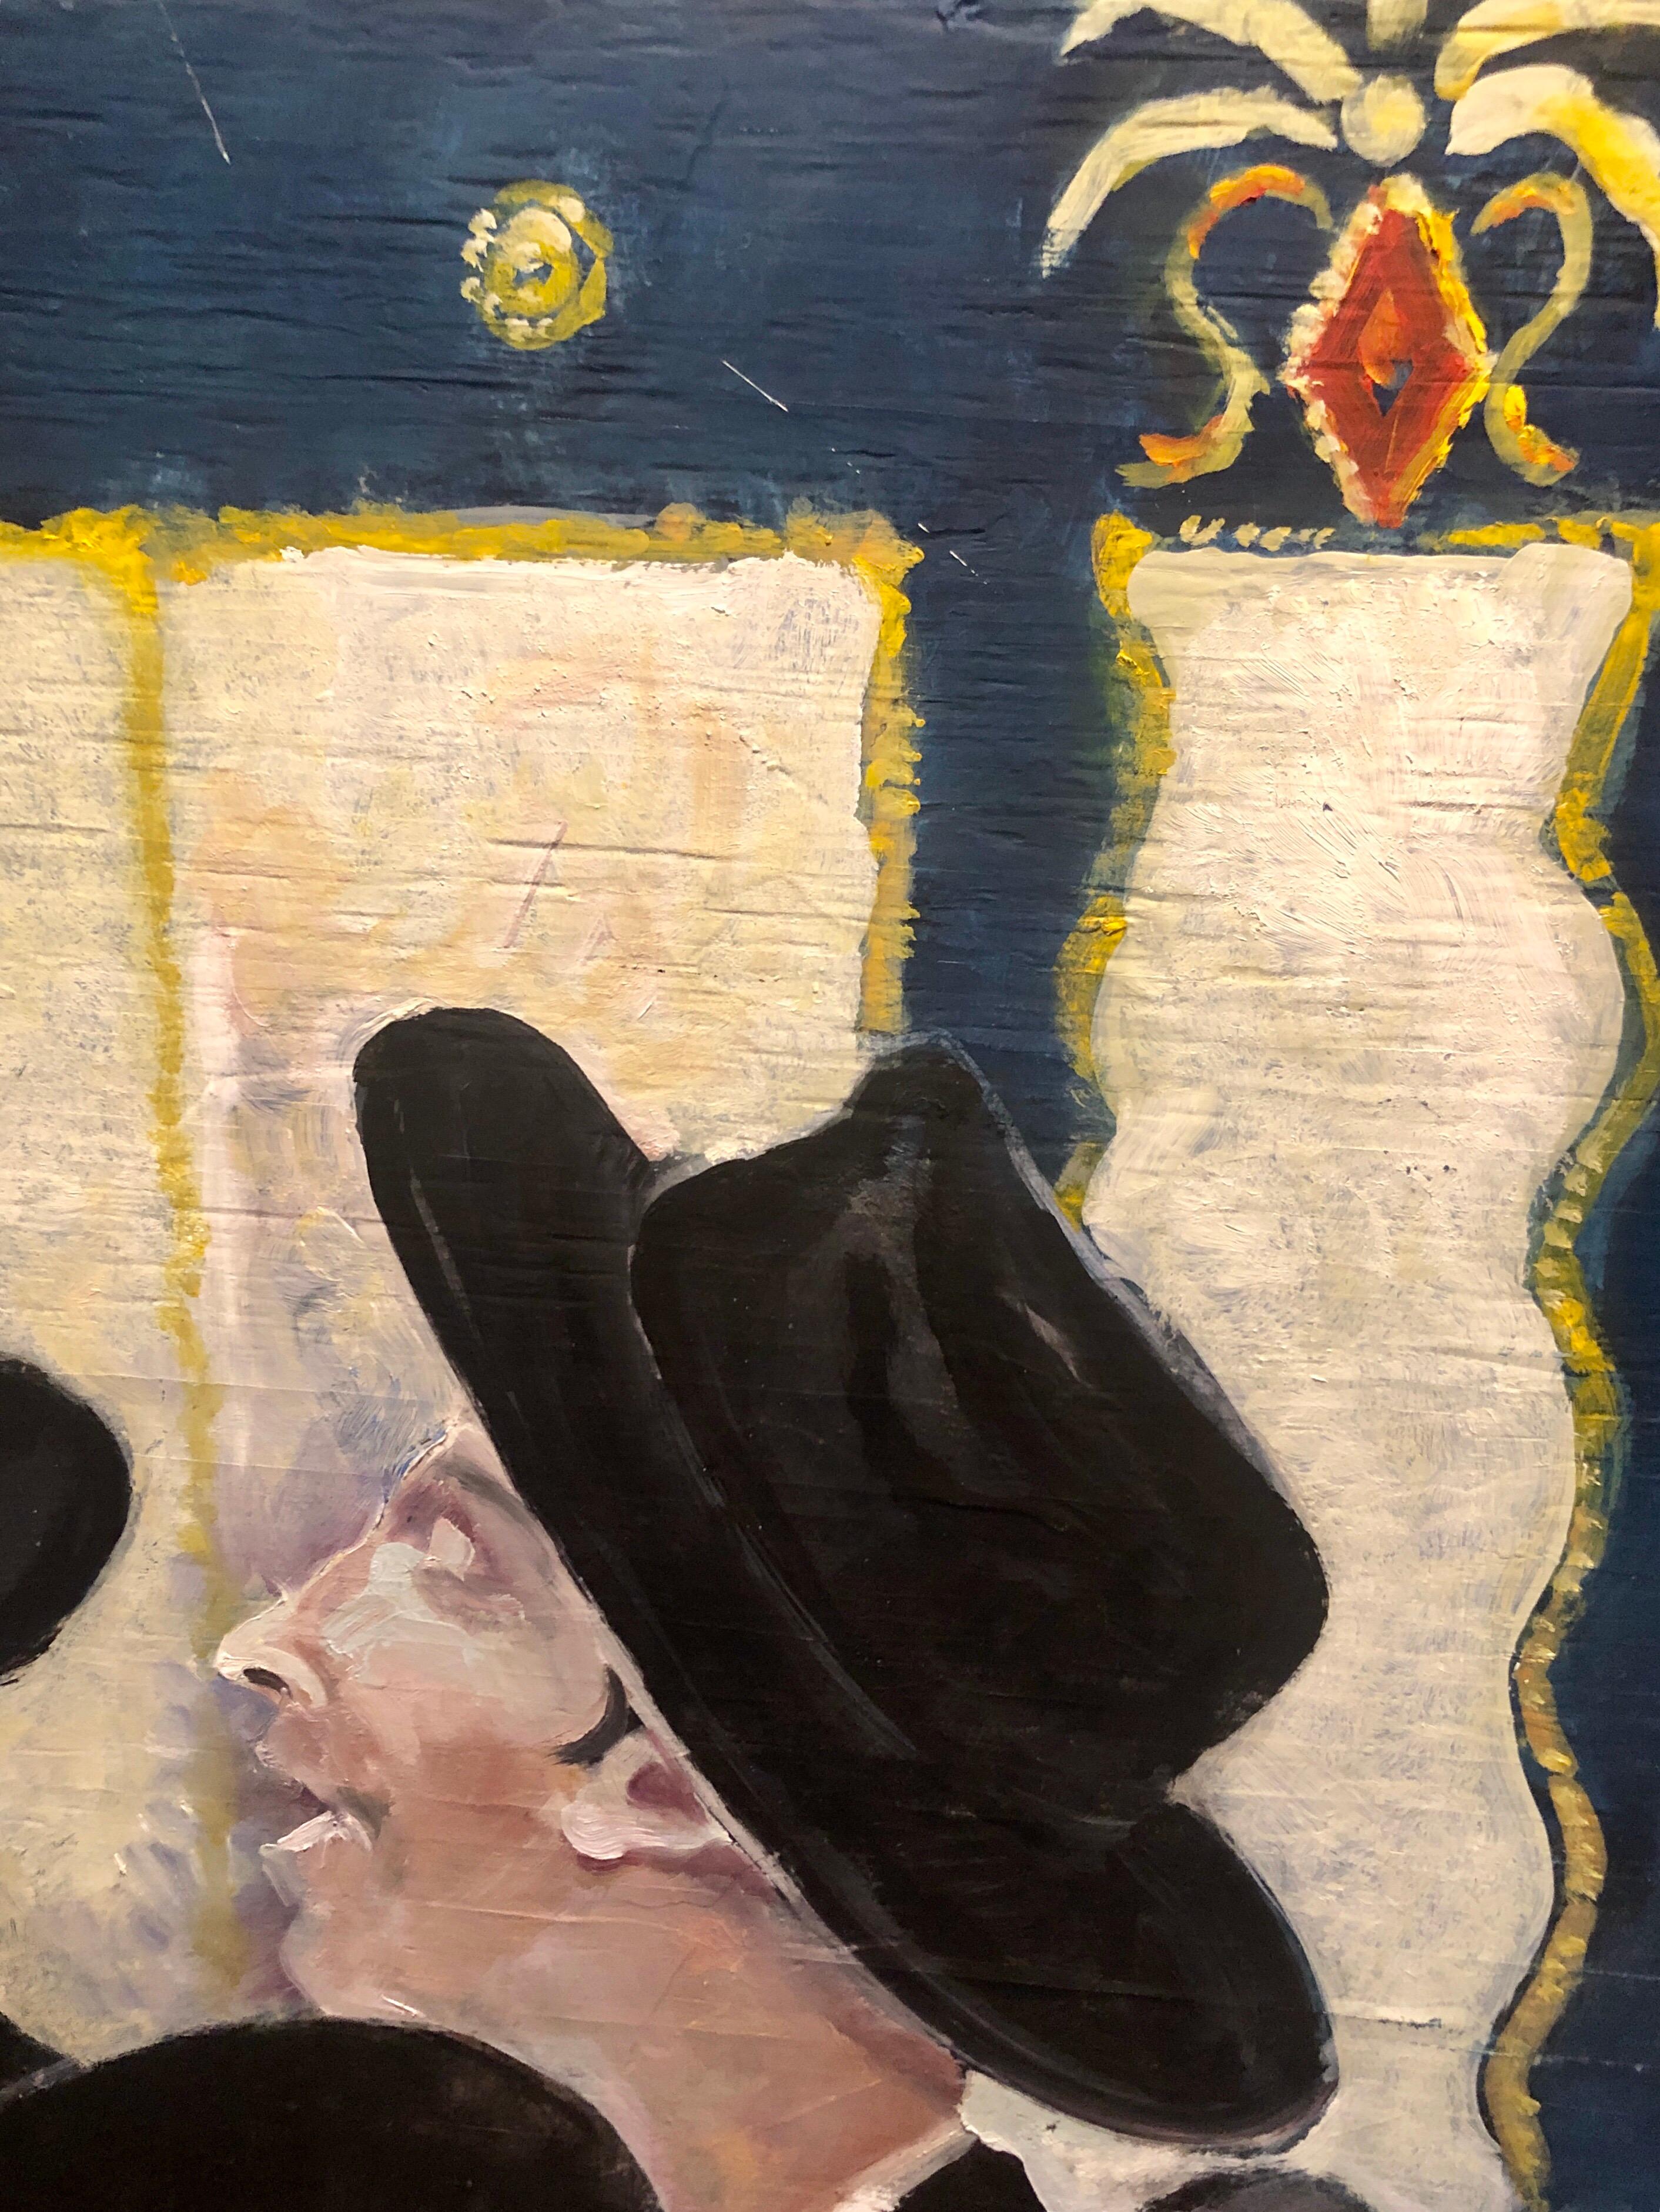 Grande peinture d'art populaire hassidique, Chabad Lubavitch 770 Eastern Parkway Synagogue
Des étudiants dansent pour accueillir le Moshiach (Messie)

MICHAEL GLEIZER

Expositions personnelles sélectionnées
2019 Exhibition of Paintings, Amsterdam